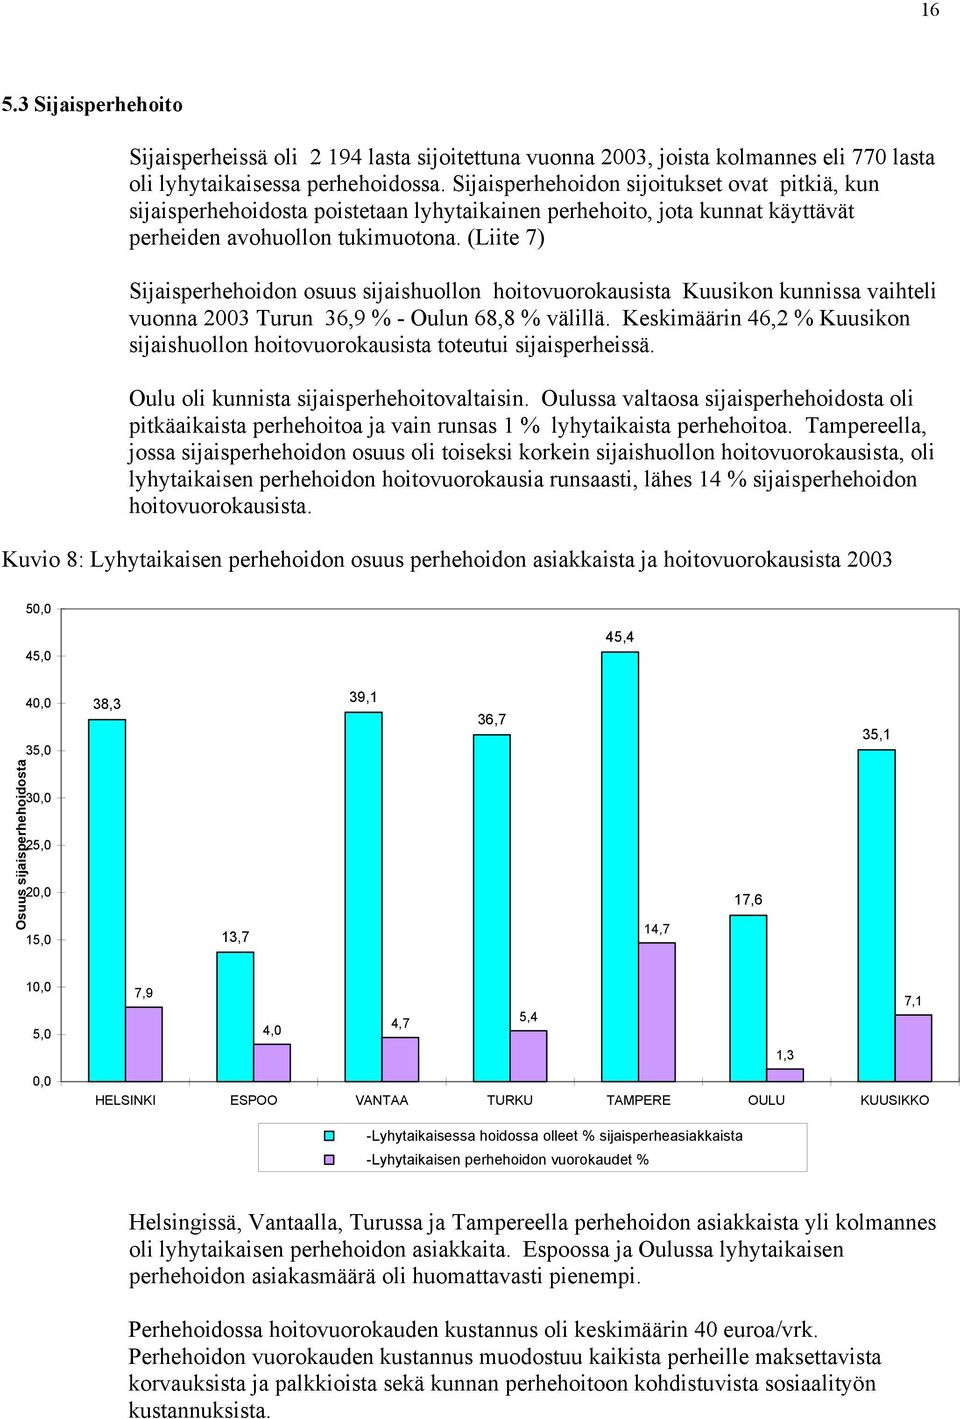 (Liite 7) Sijaisperhehoidon osuus sijaishuollon hoitovuorokausista Kuusikon kunnissa vaihteli vuonna 2003 Turun 36,9 % - Oulun 68,8 % välillä.